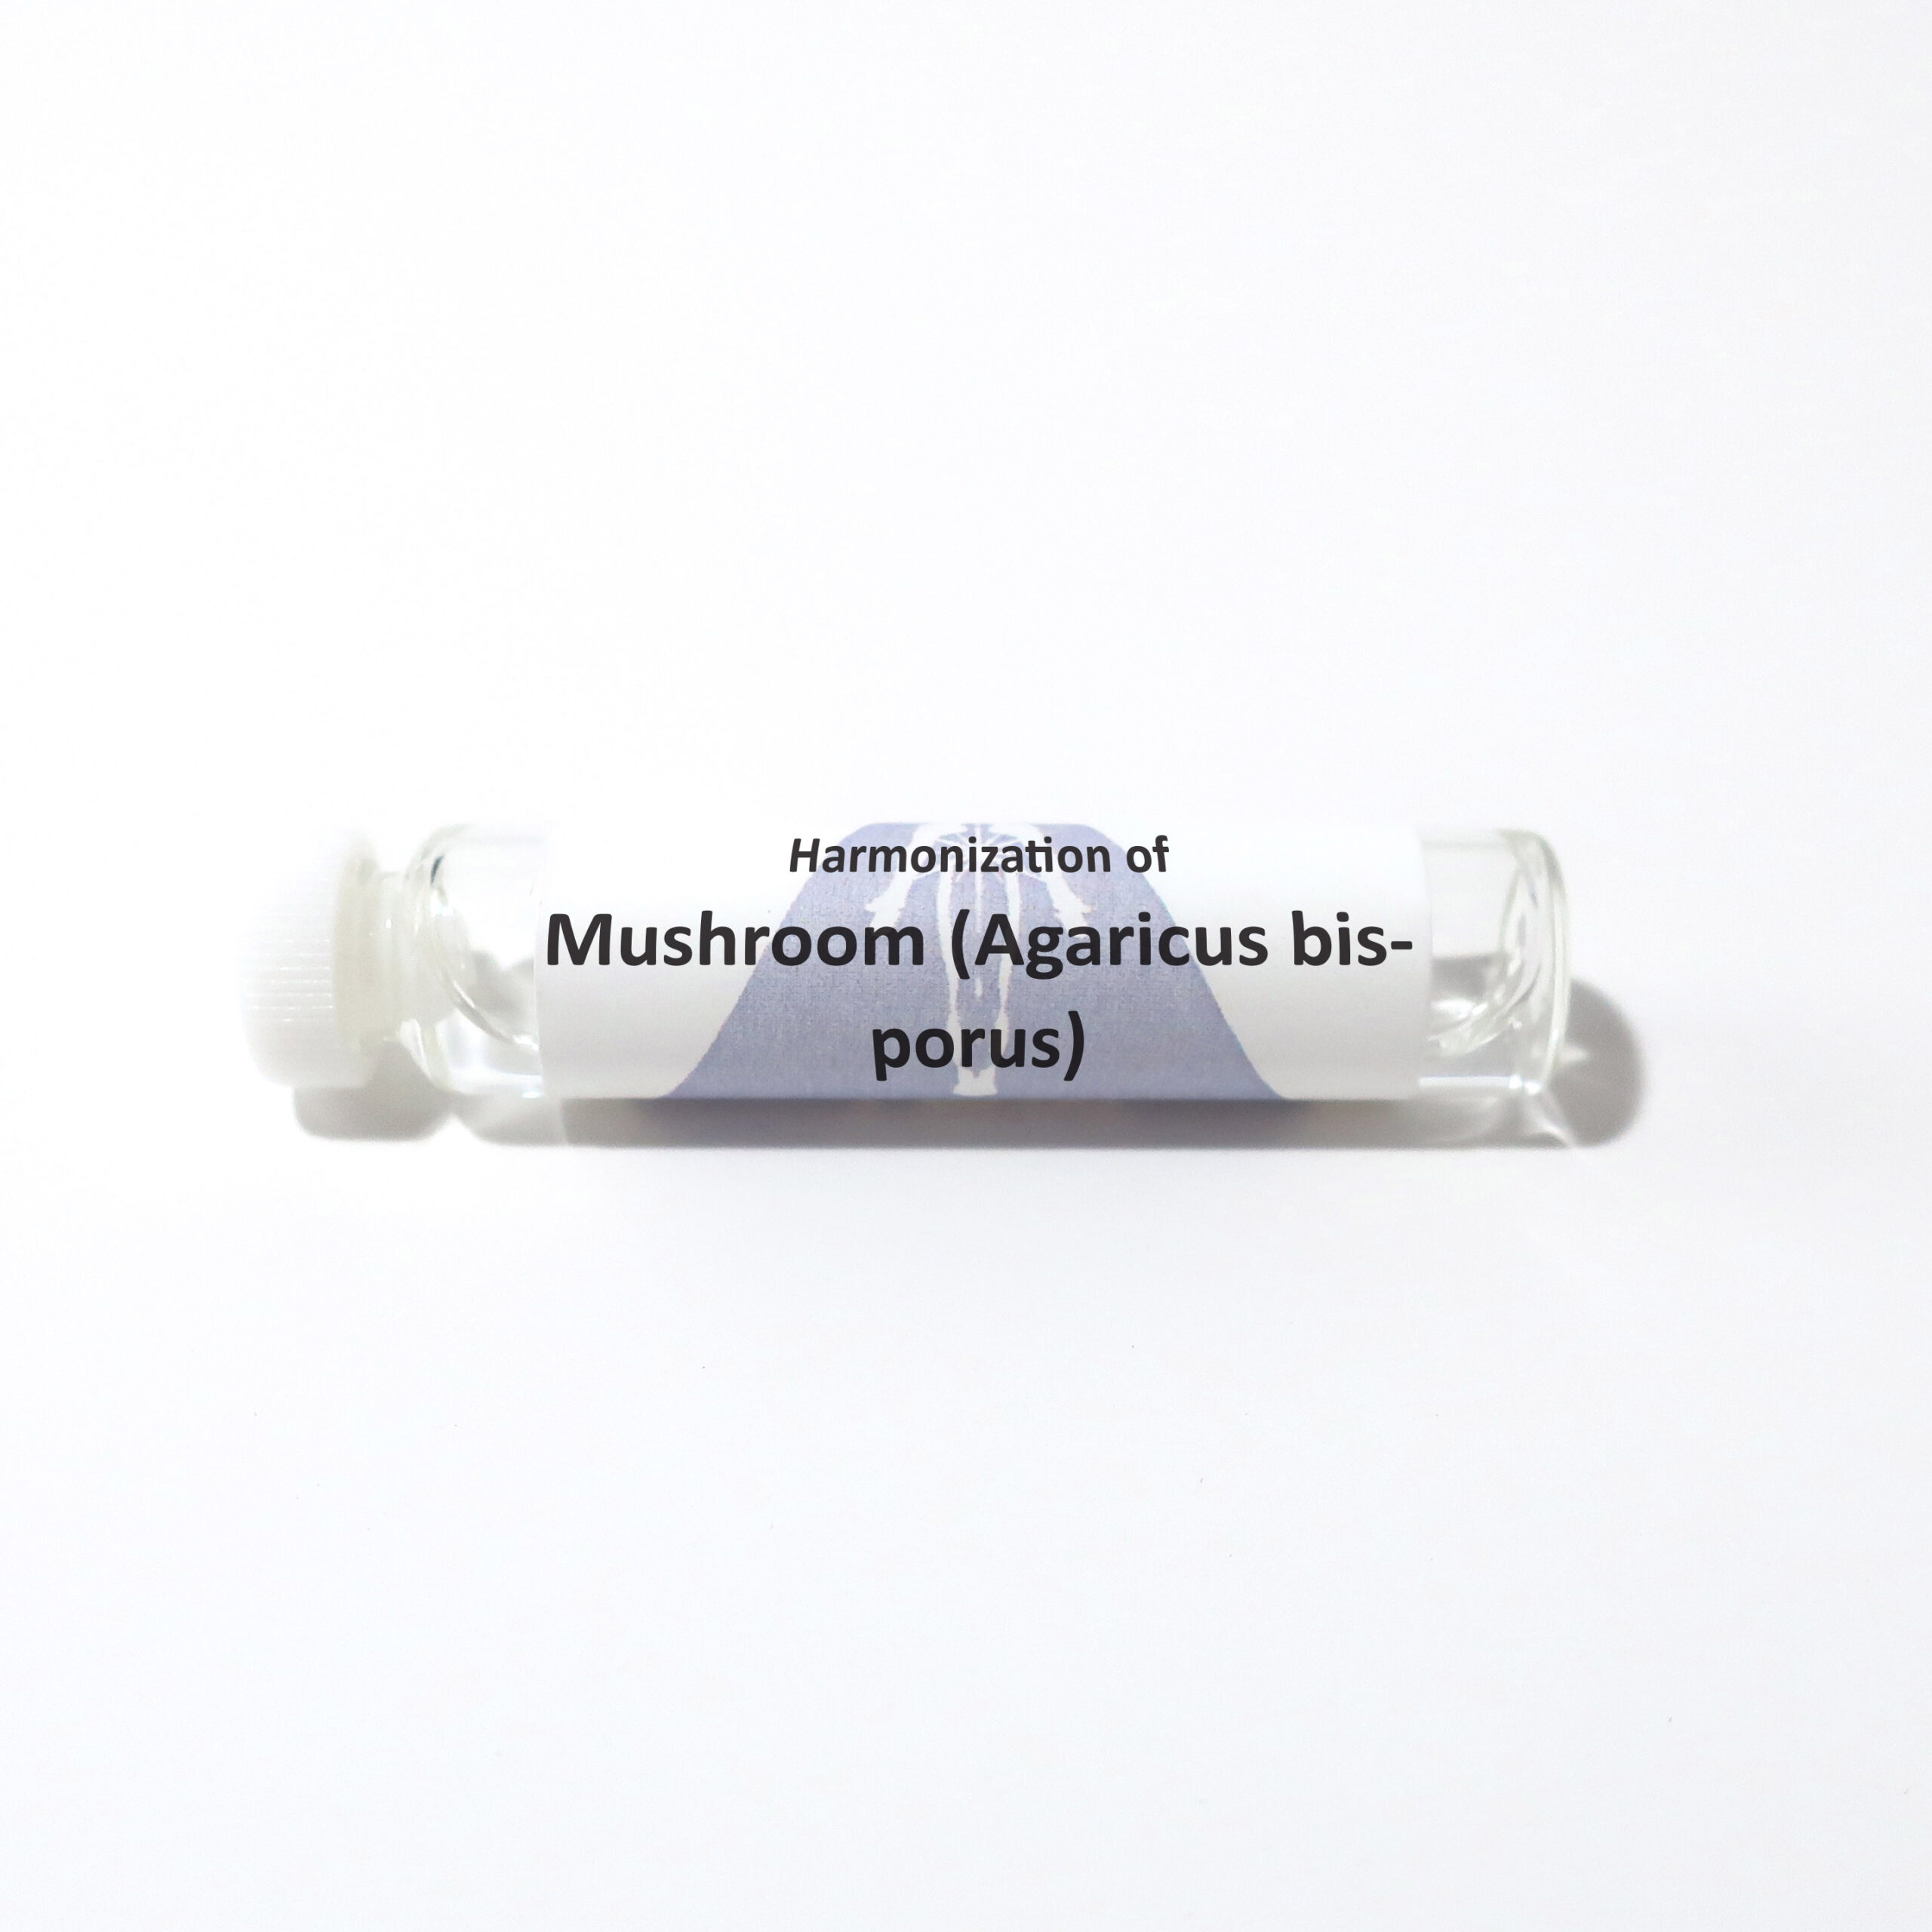 Mushroom (Agaricus bisporus)